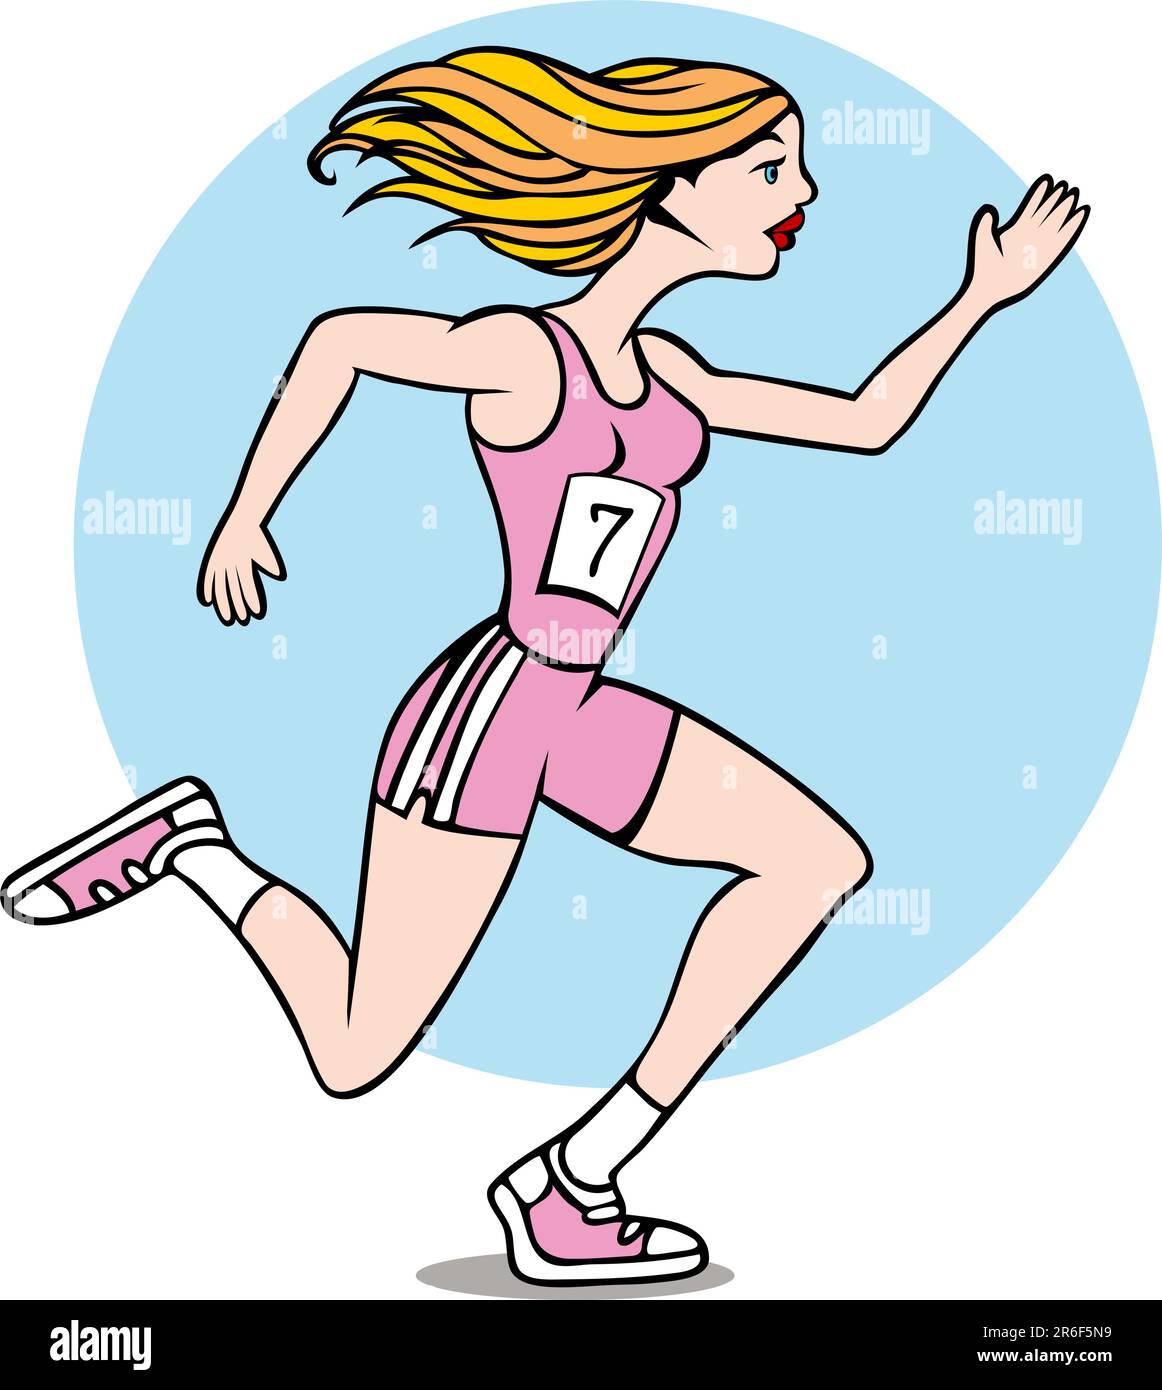 Cartoon mit einer Frau, die ein Rennen führt und ihre Dienstnummer trägt. Stock Vektor